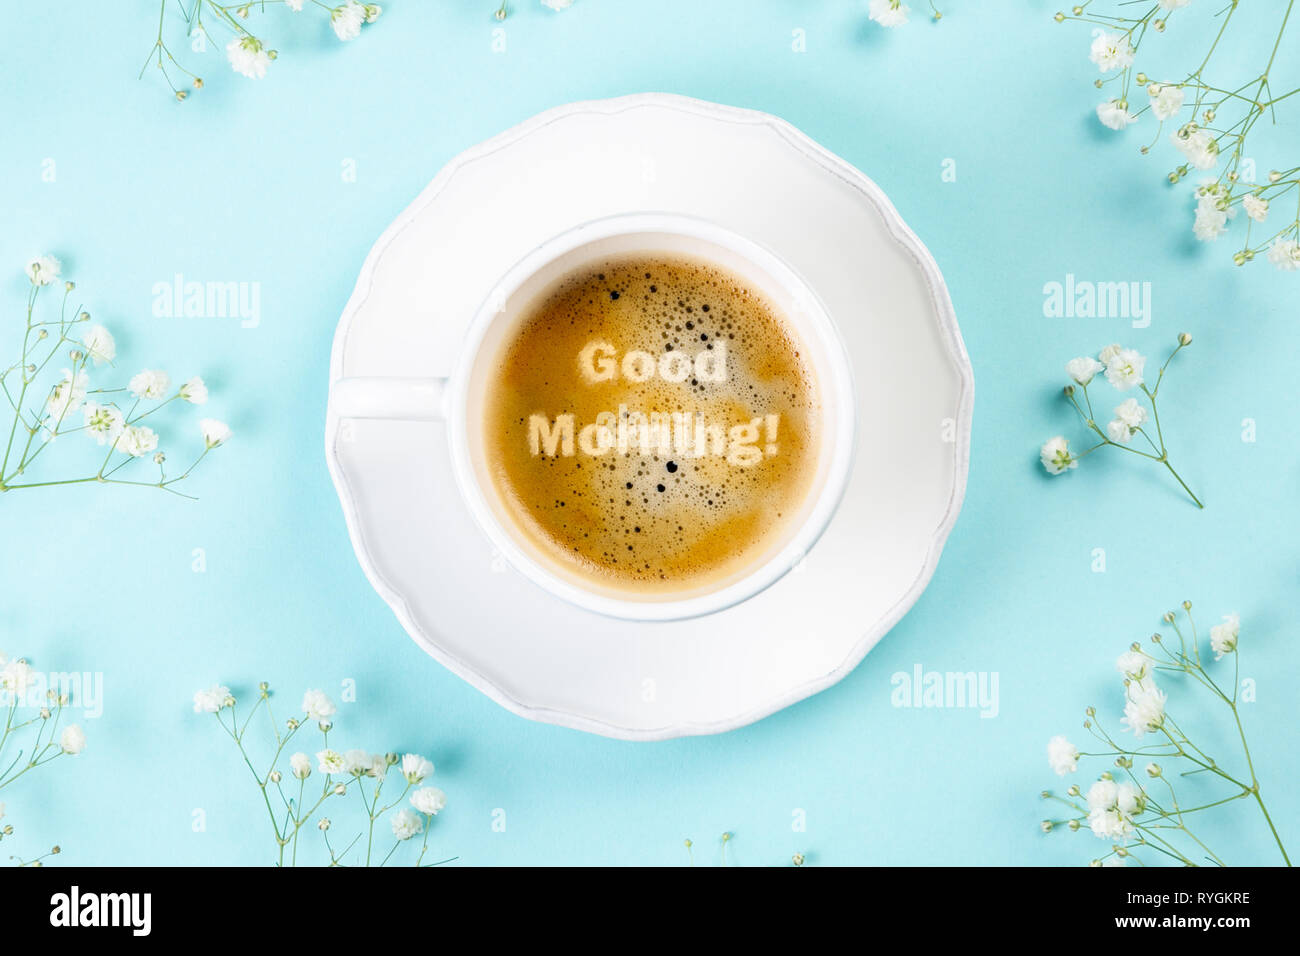 Buona mattina concetto - caffè, fiori, notebook Foto Stock